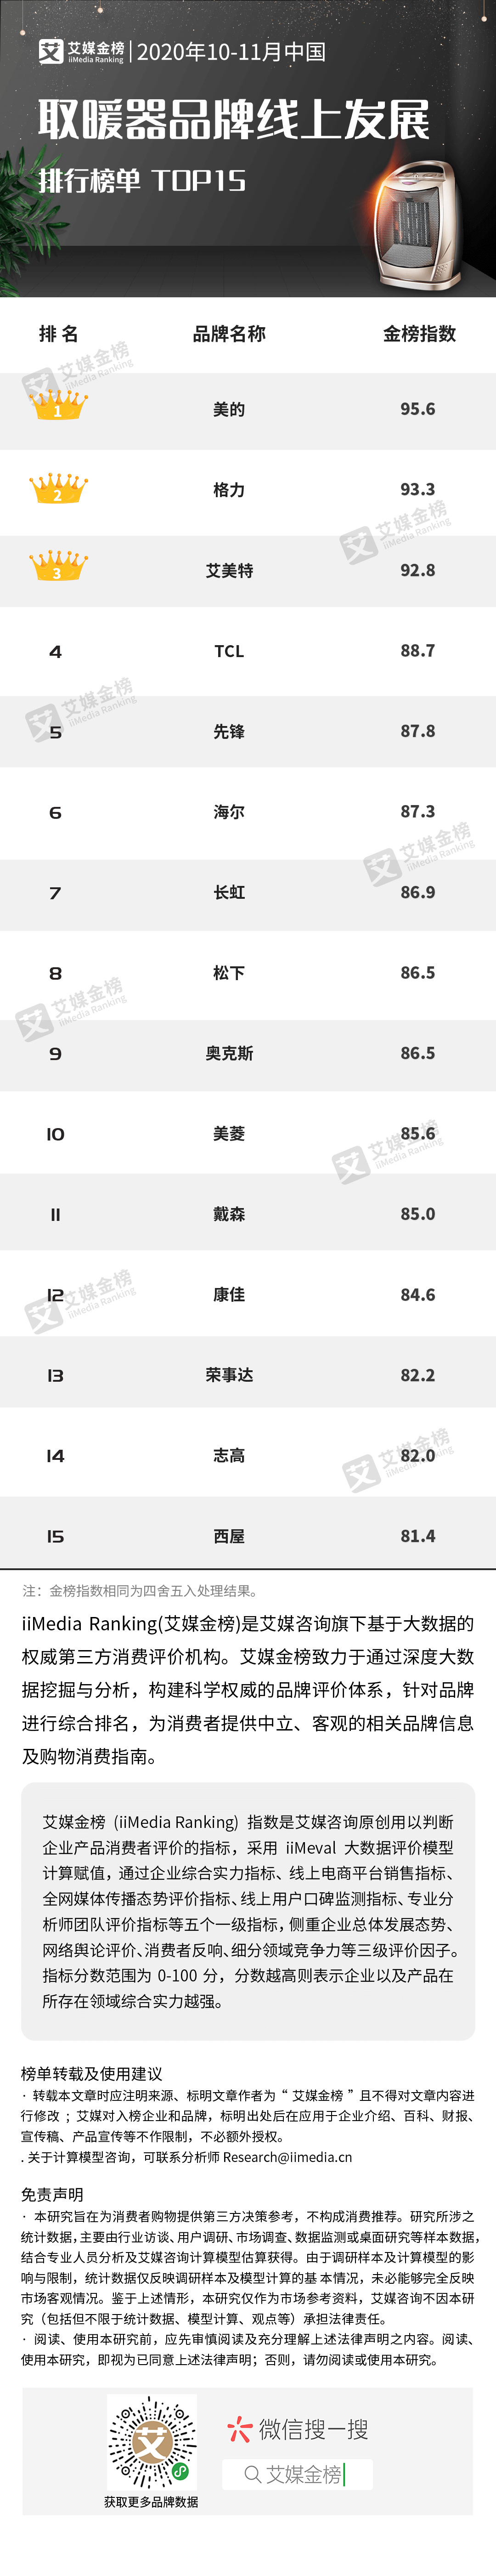 取暖器排行_艾媒金榜|2020年10-11月中国取暖器品牌线上发展排行榜单TOP15